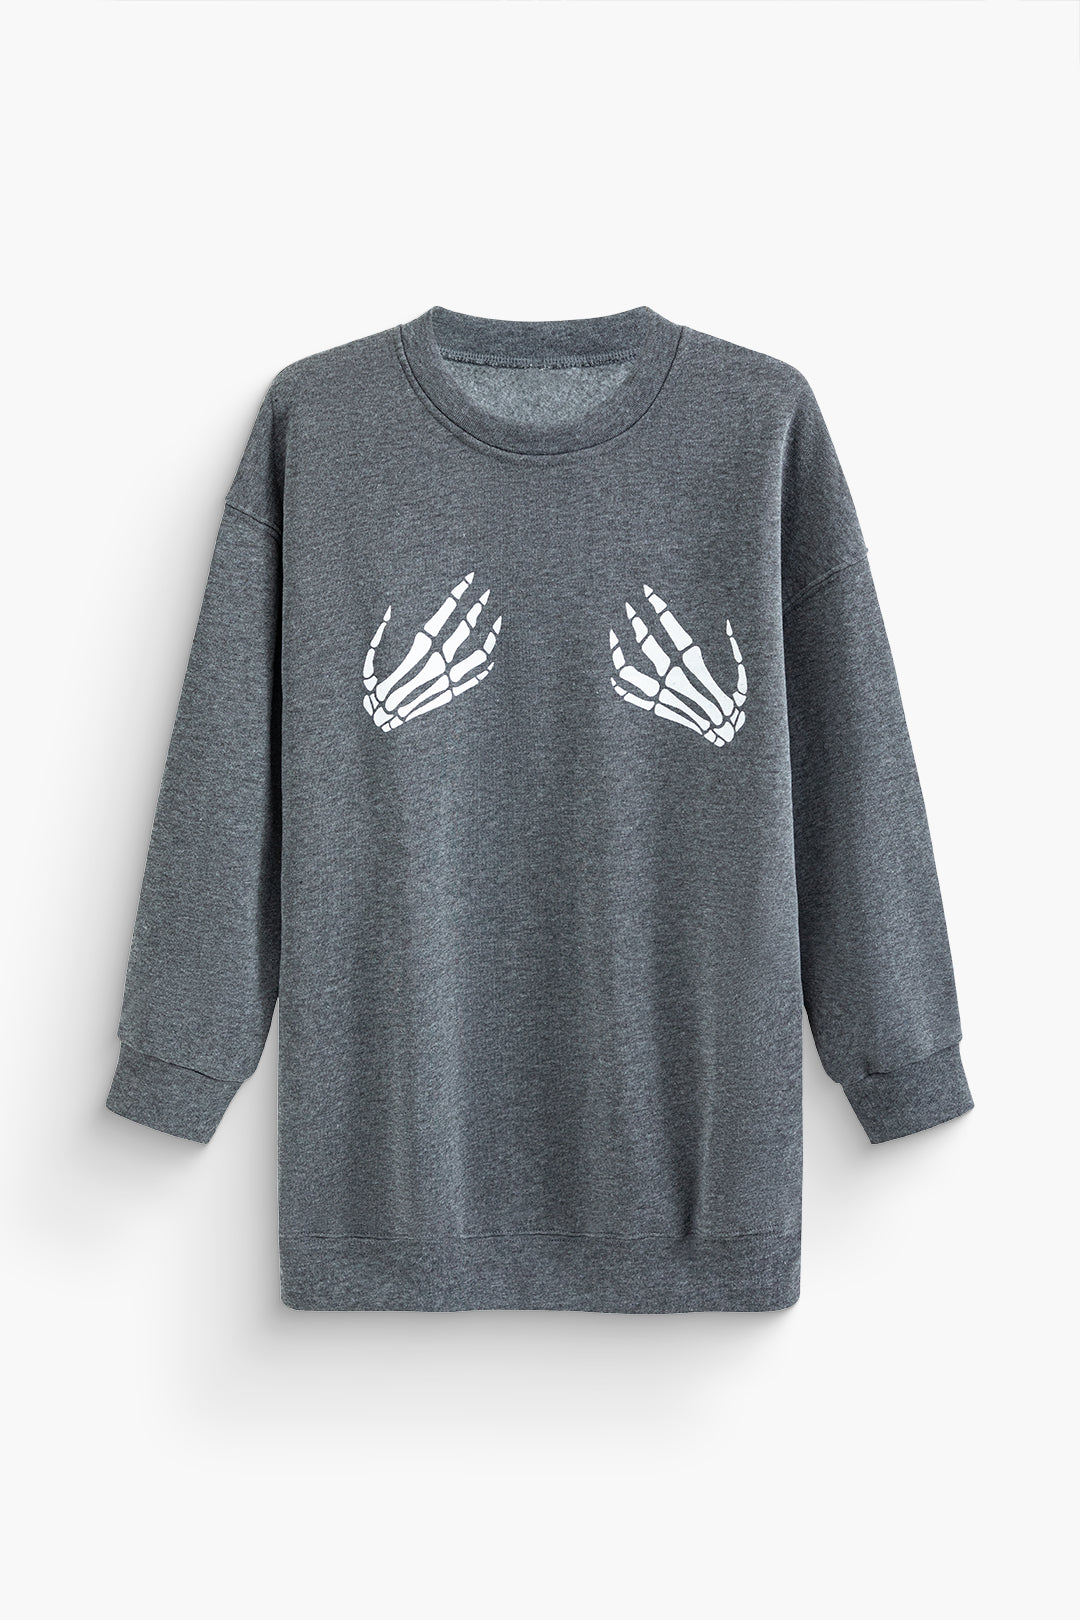 Hands Print Round Neck Sweatshirt